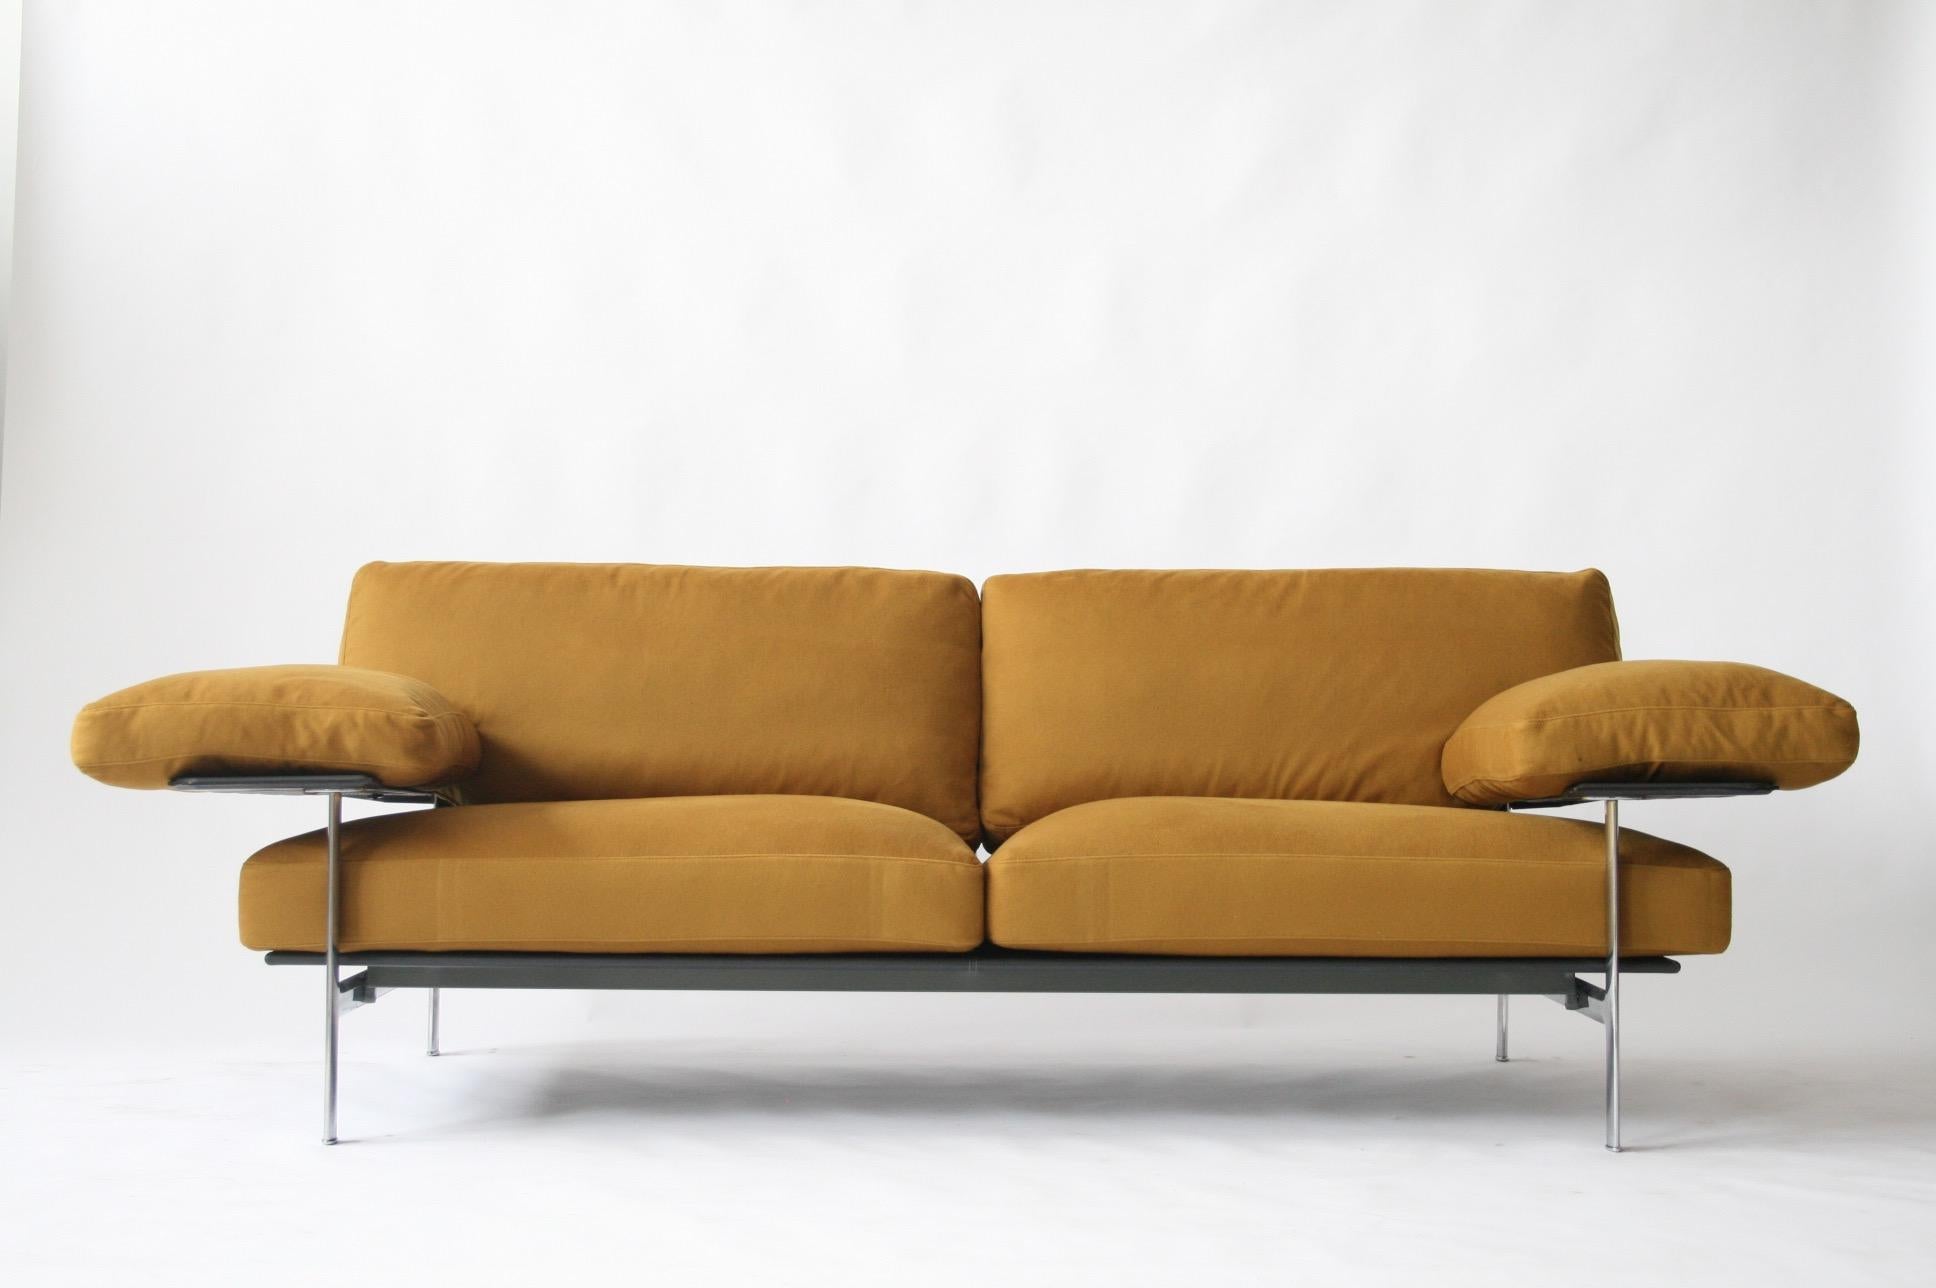 Aluminum Diesis Sofa by Antonio Citterio for B&B Italia